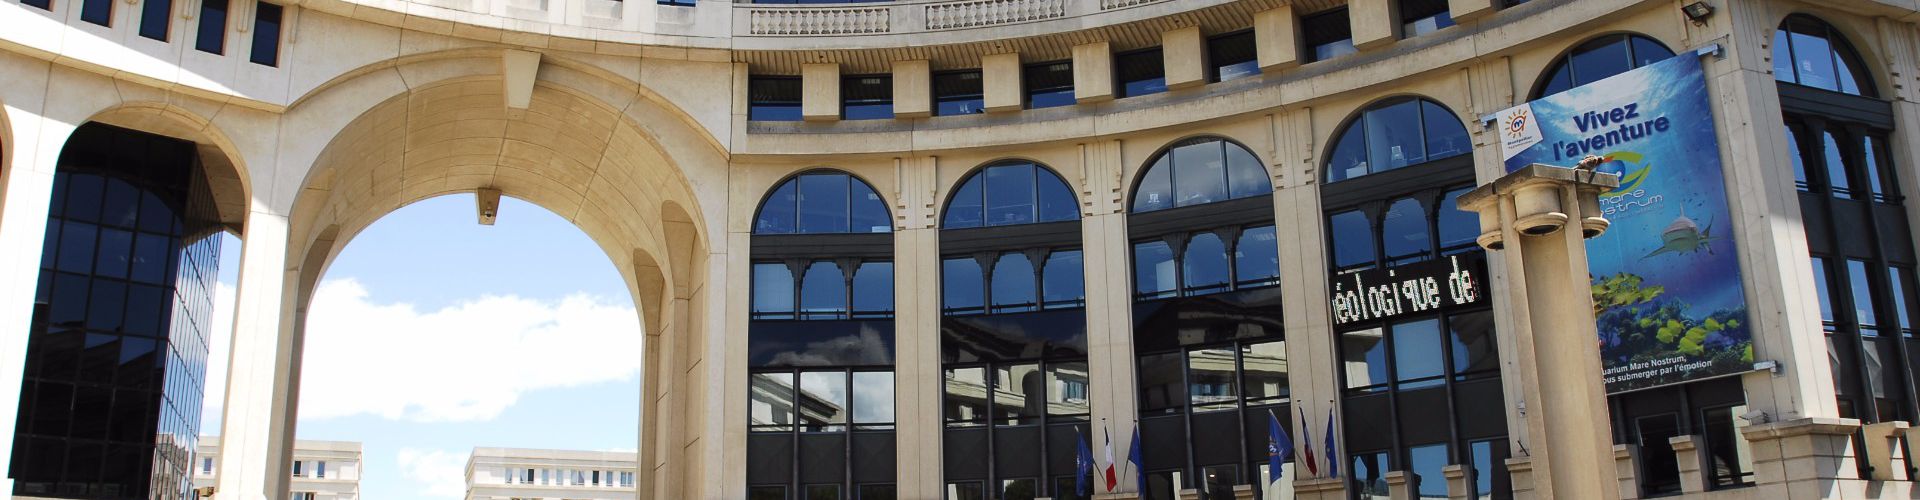 Network - Propriété de prestige à vendre Montpellier Uzès Sète